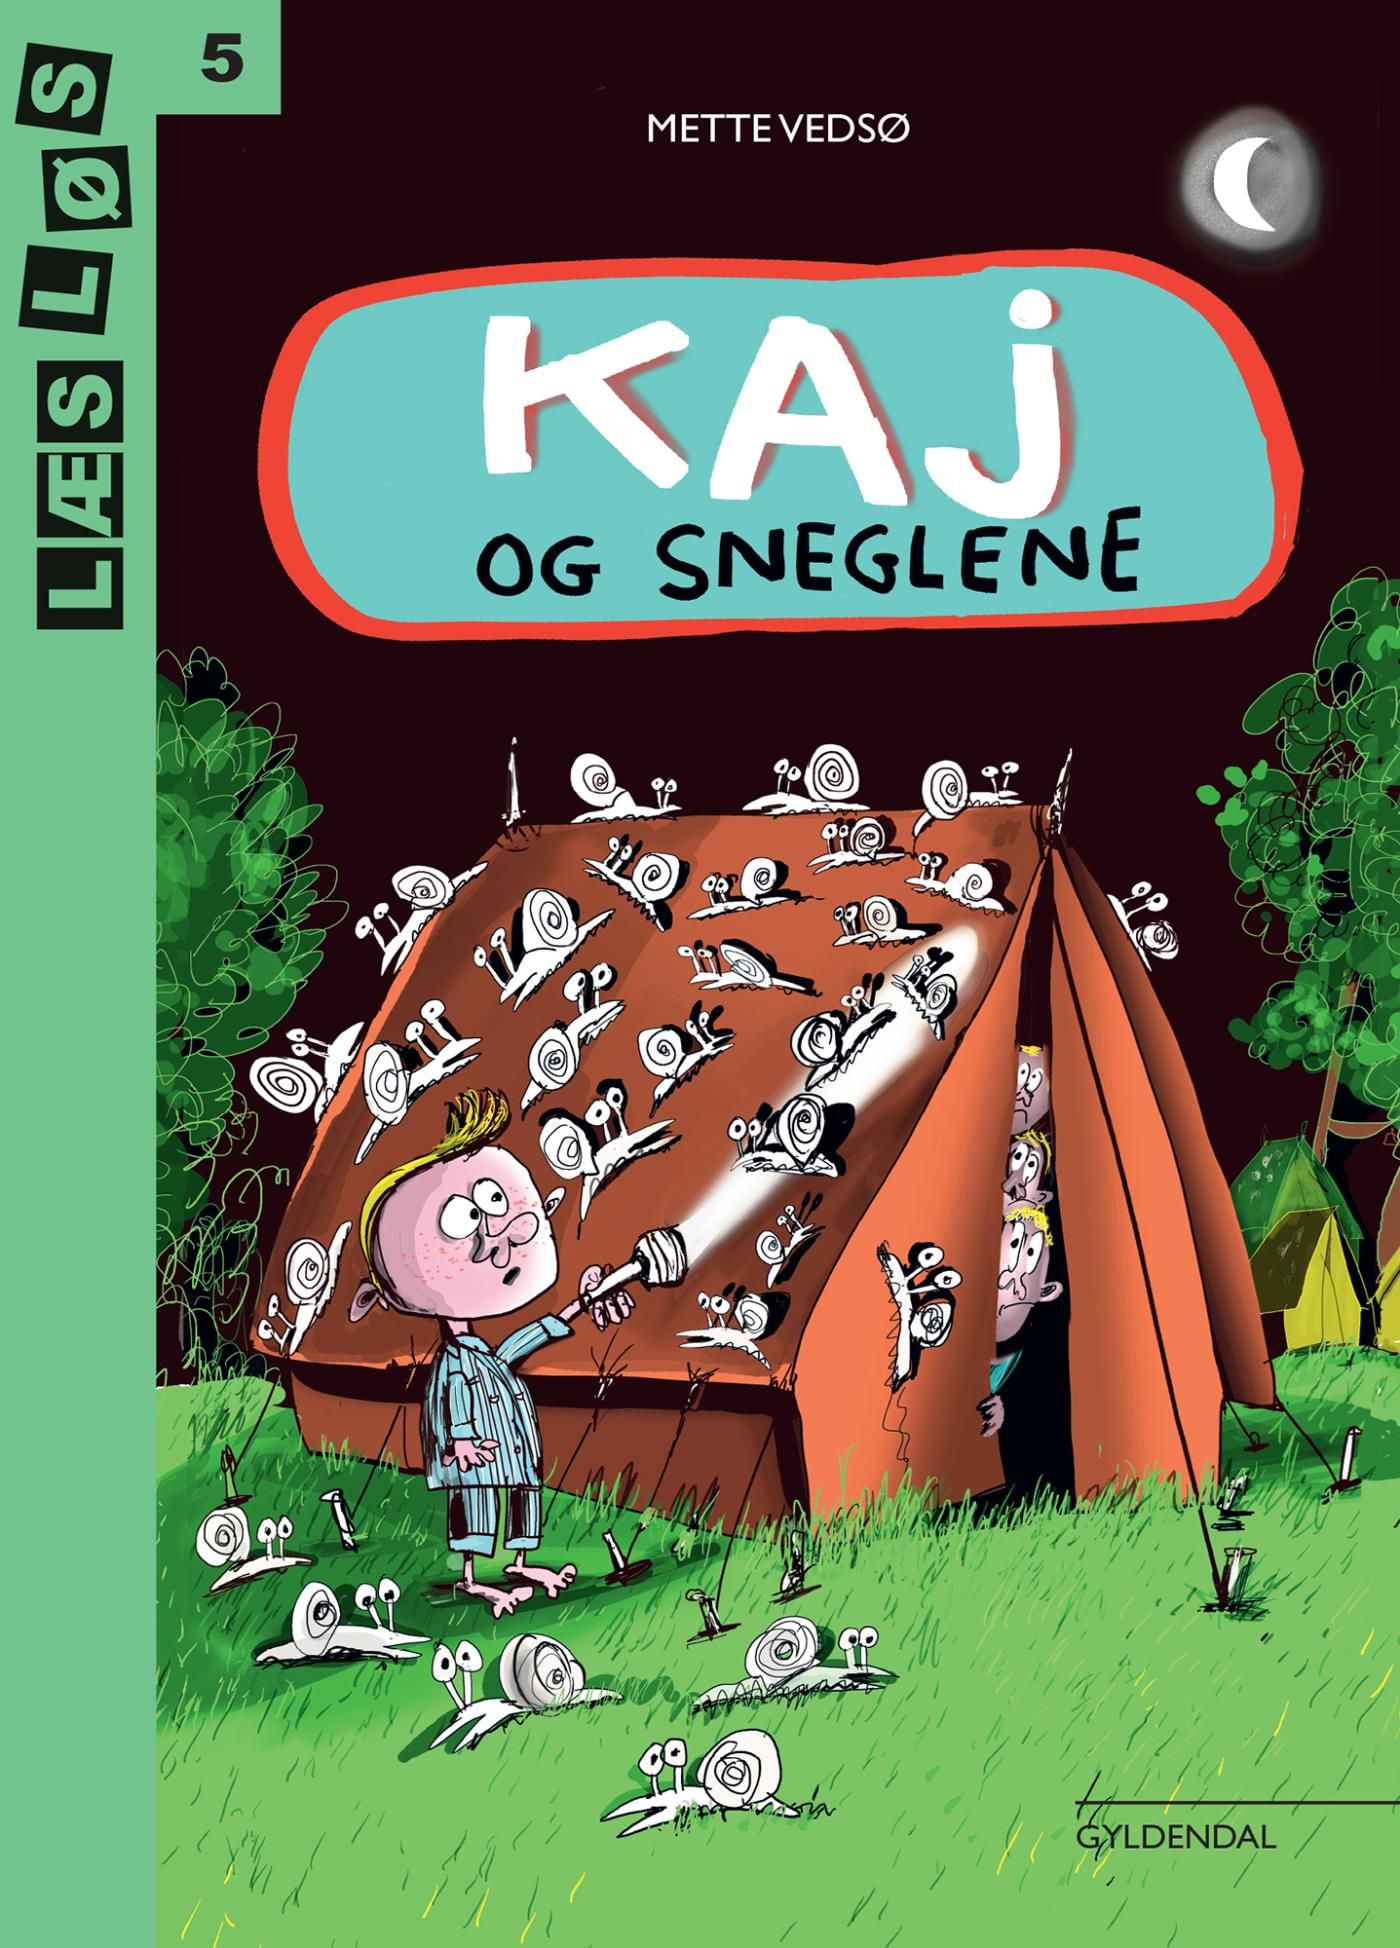 Kaj og sneglene, eBook by Mette Vedsø